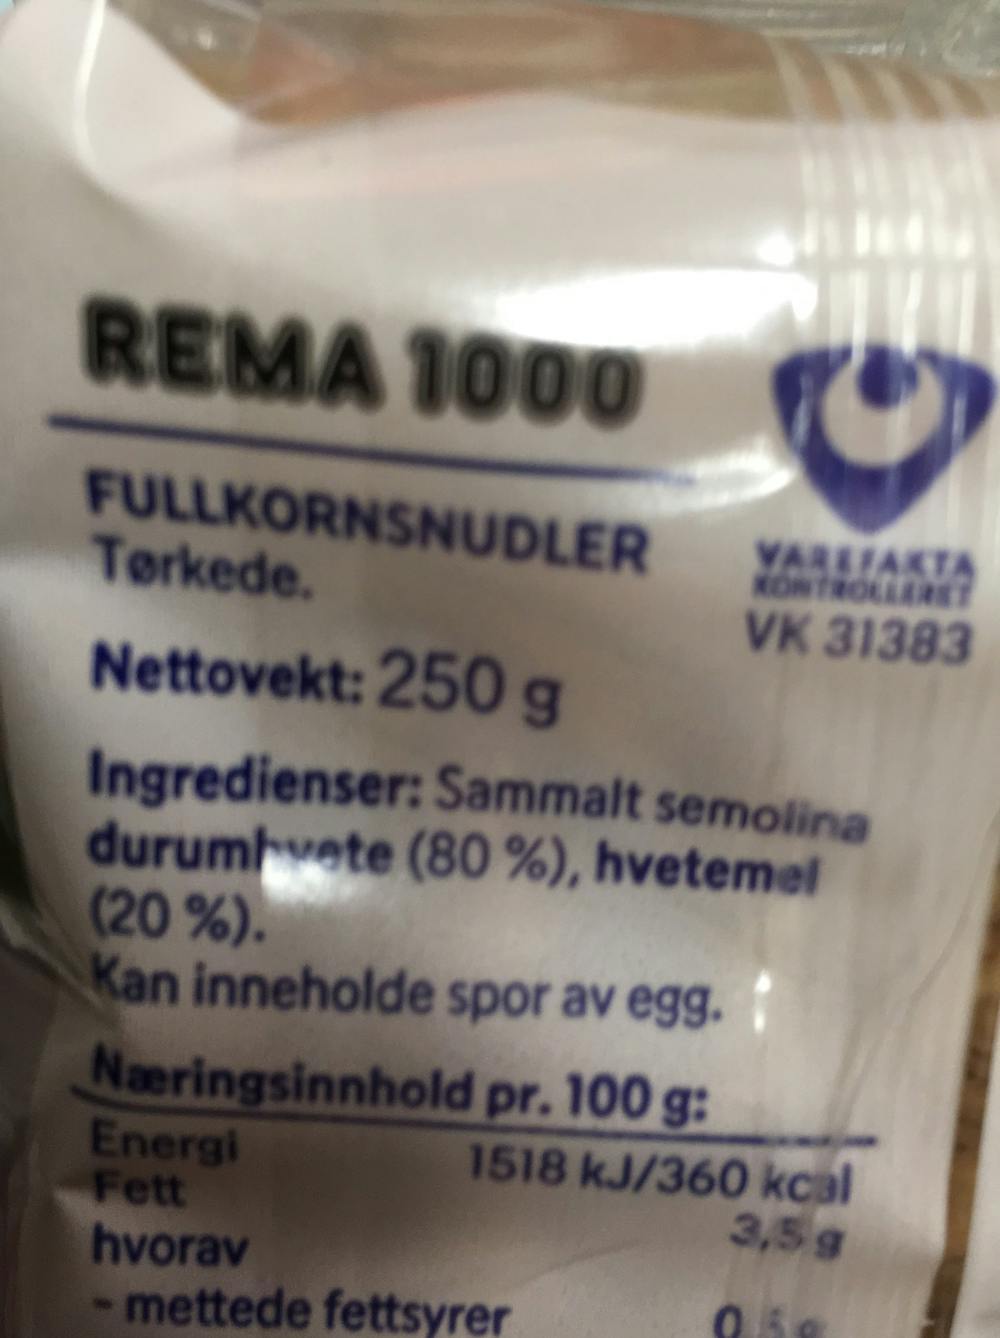 Ingredienslisten til Rema 1000 Fullkornsnudler